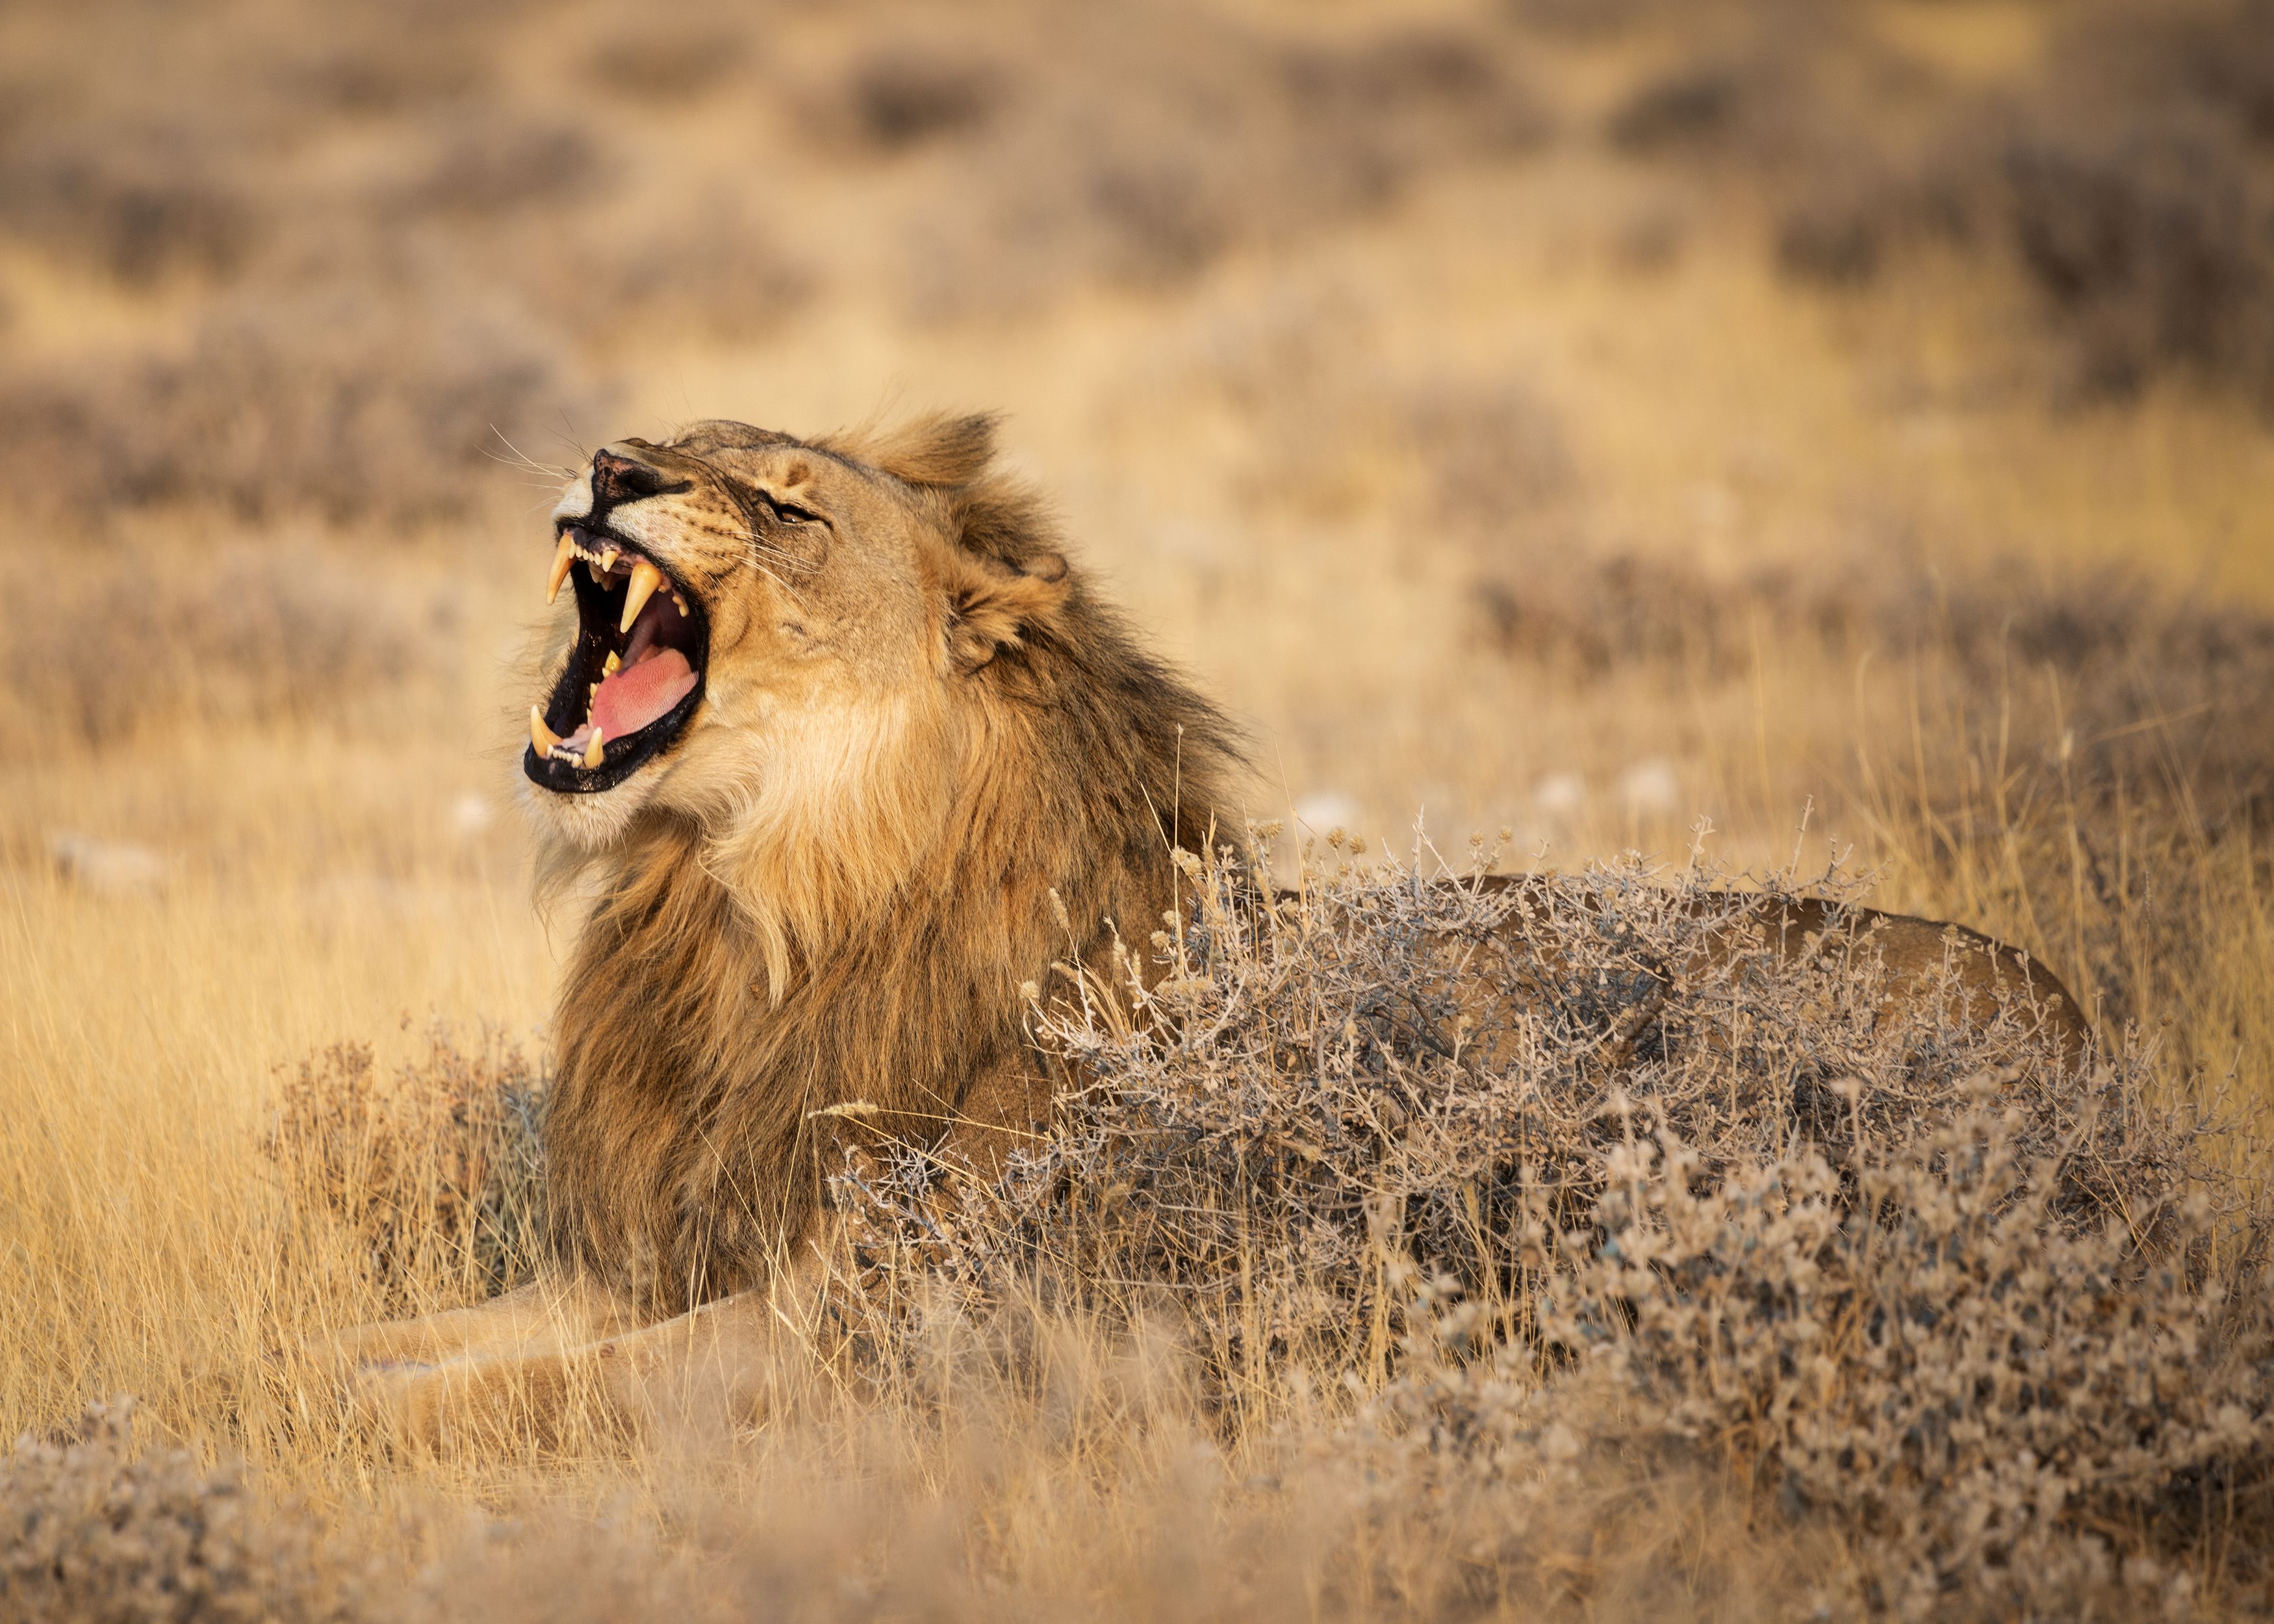 #лев #сафари #намибия #этоша #национальный парк #рев #namibia #africa #safari #leon #etosha, Наталия Деркач